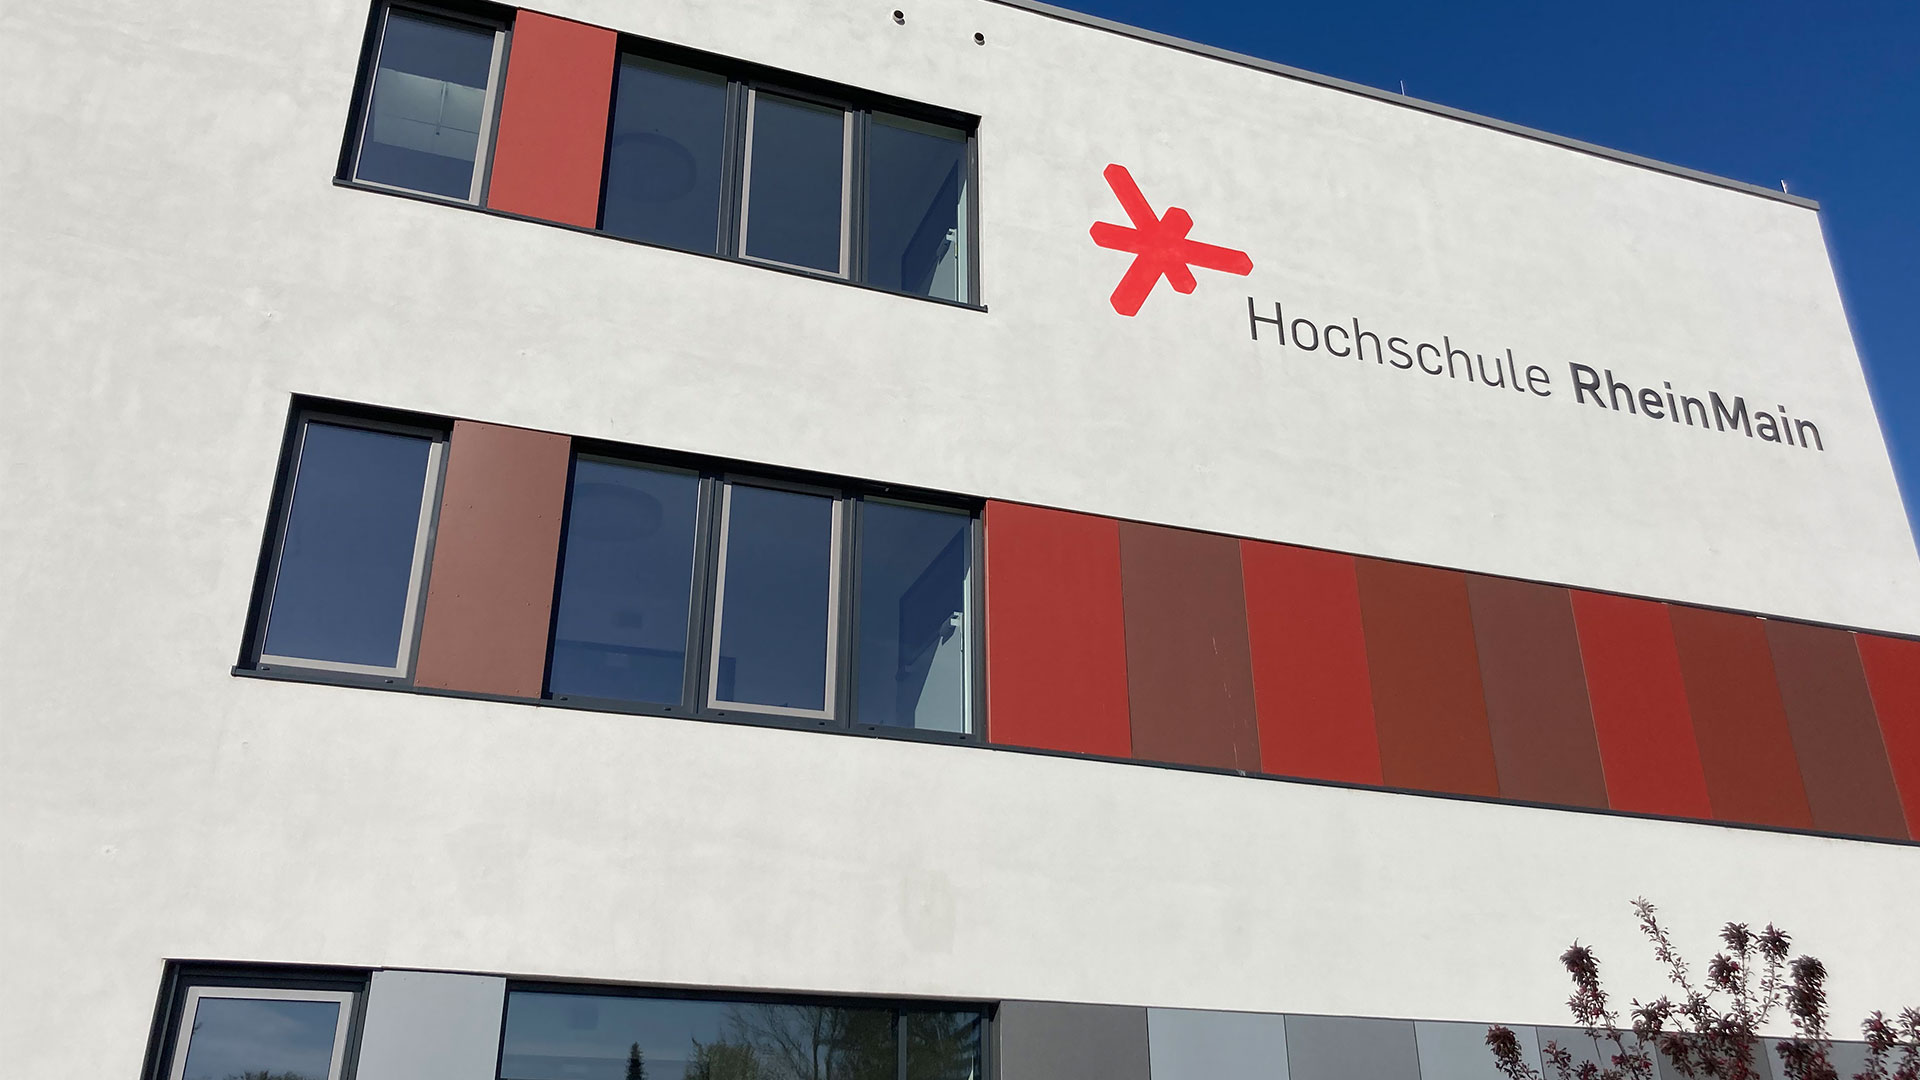 Hochschule RheinMain Campus Rüsselsheim